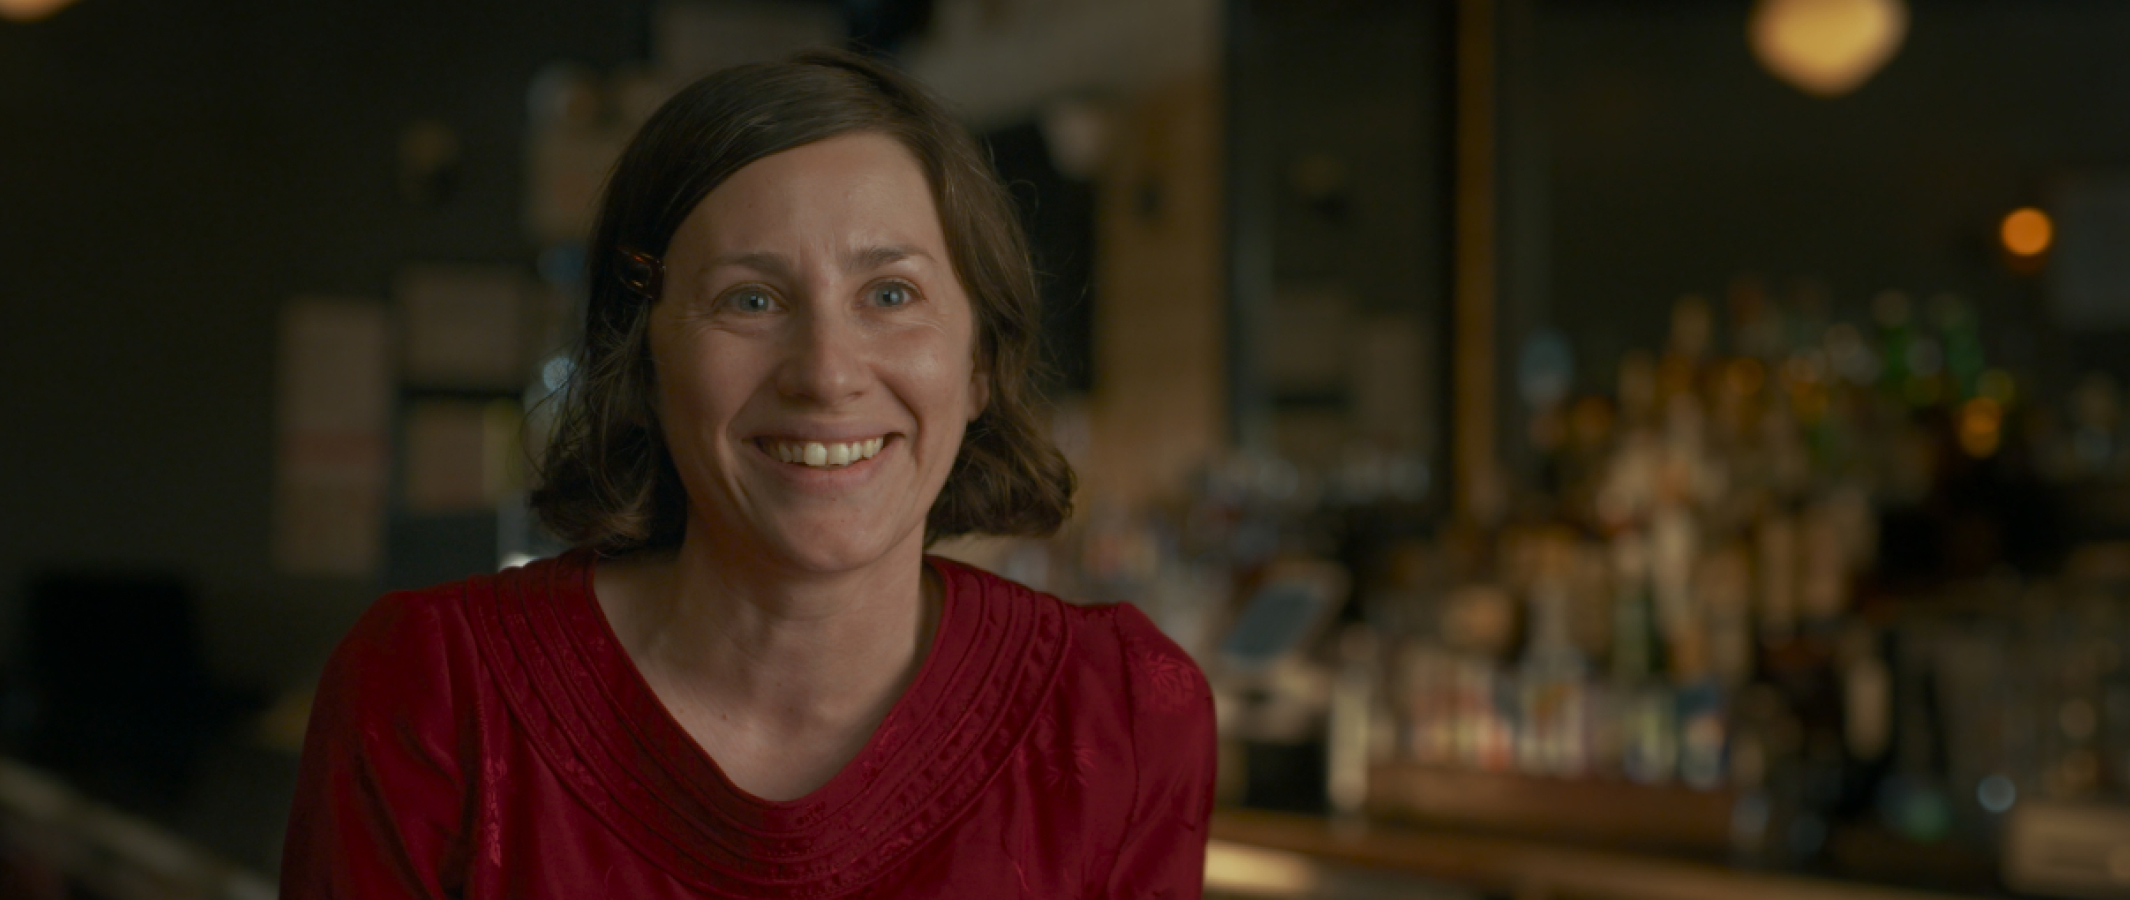 Žena se širokým úsměvem sedí v baru a mluví s člověkem za kamerou. / Smiling woman in red top with blurred bar background.